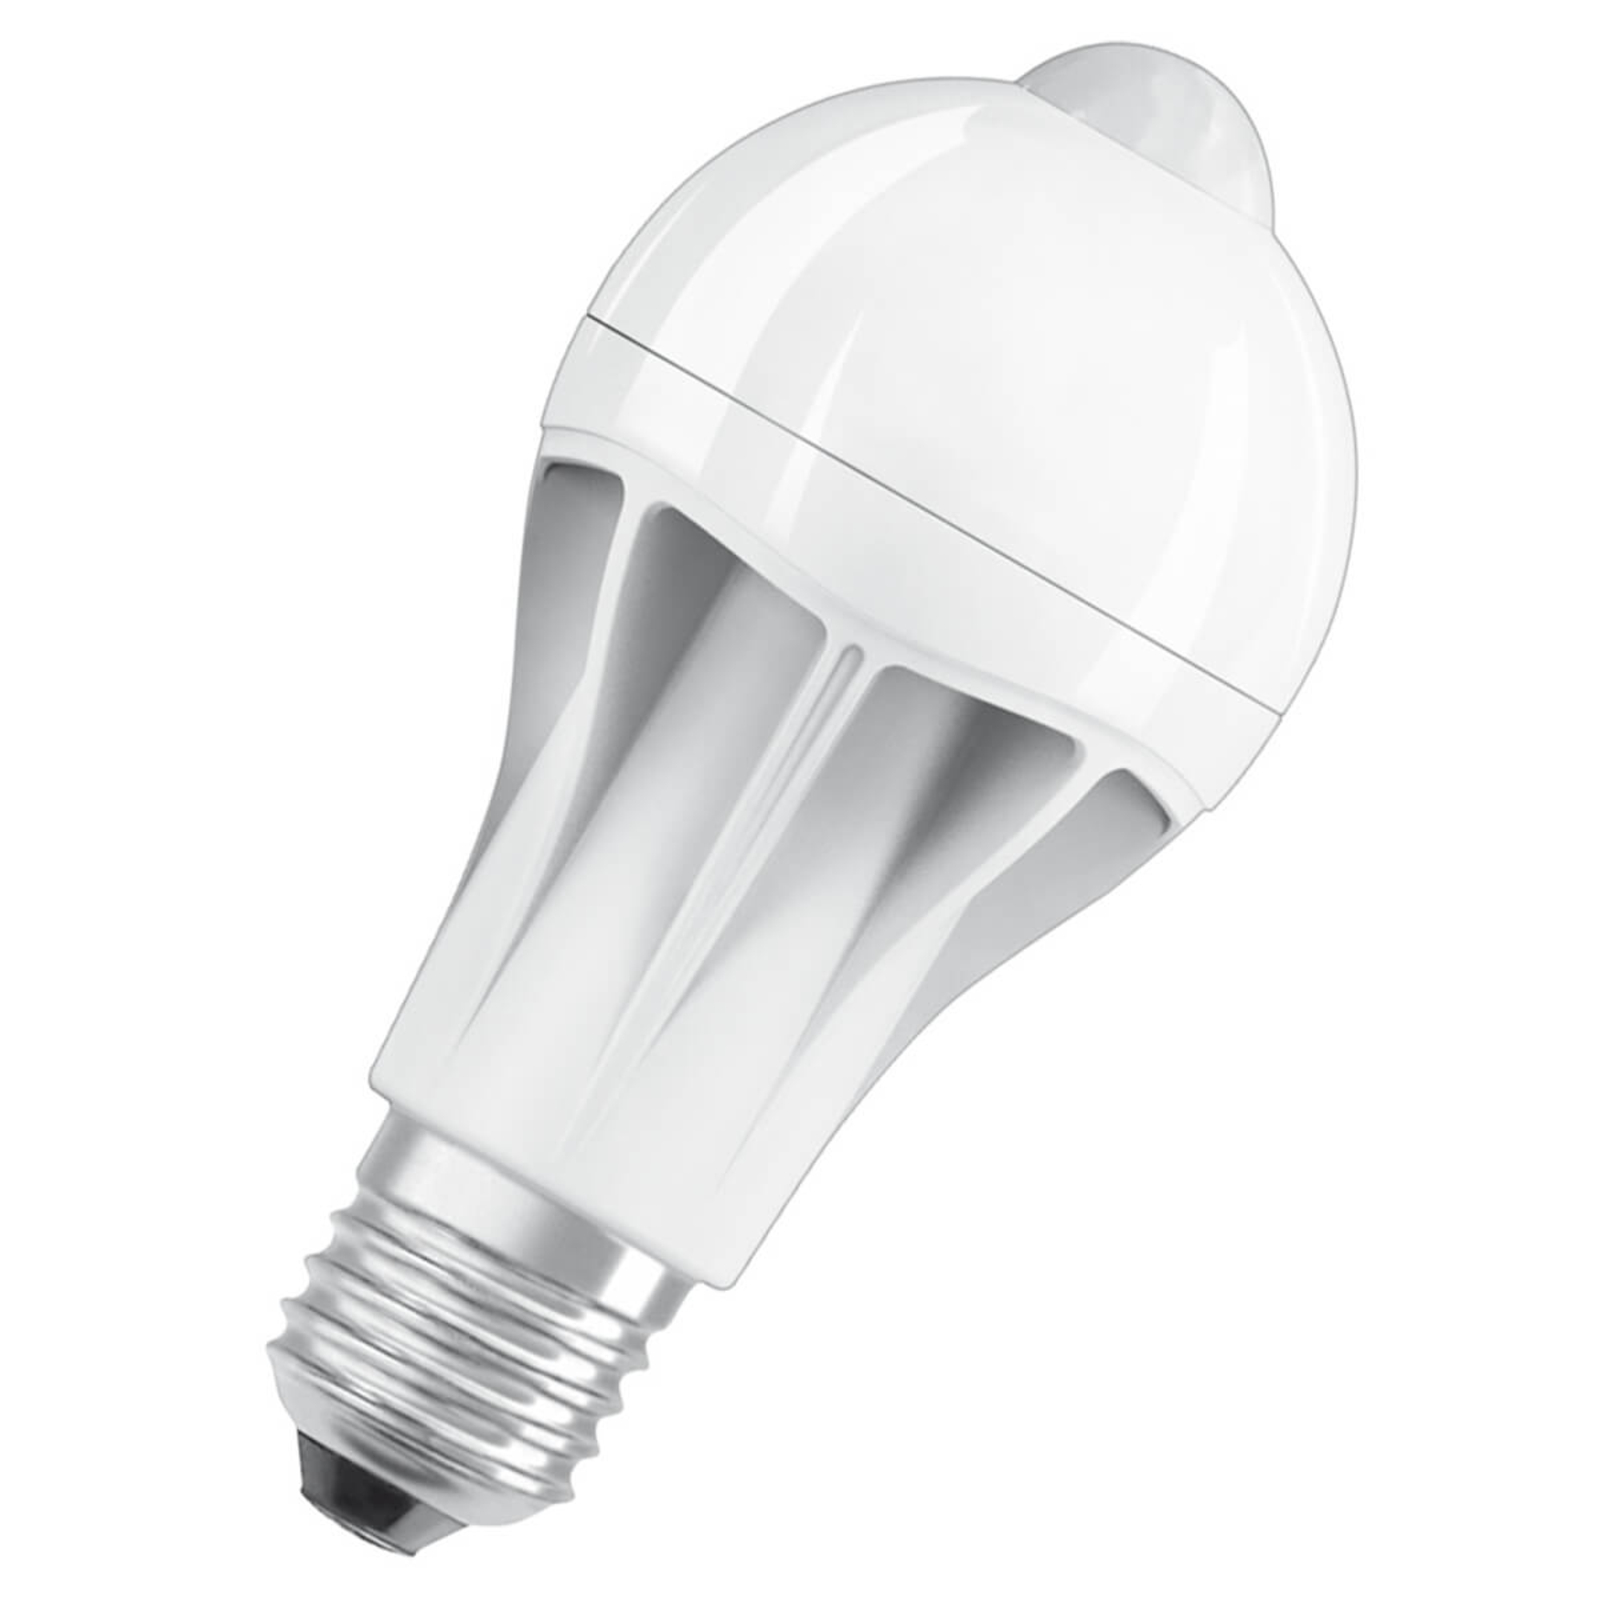 LED lamp E27 10W met bewegingssensor | Lampen24.be